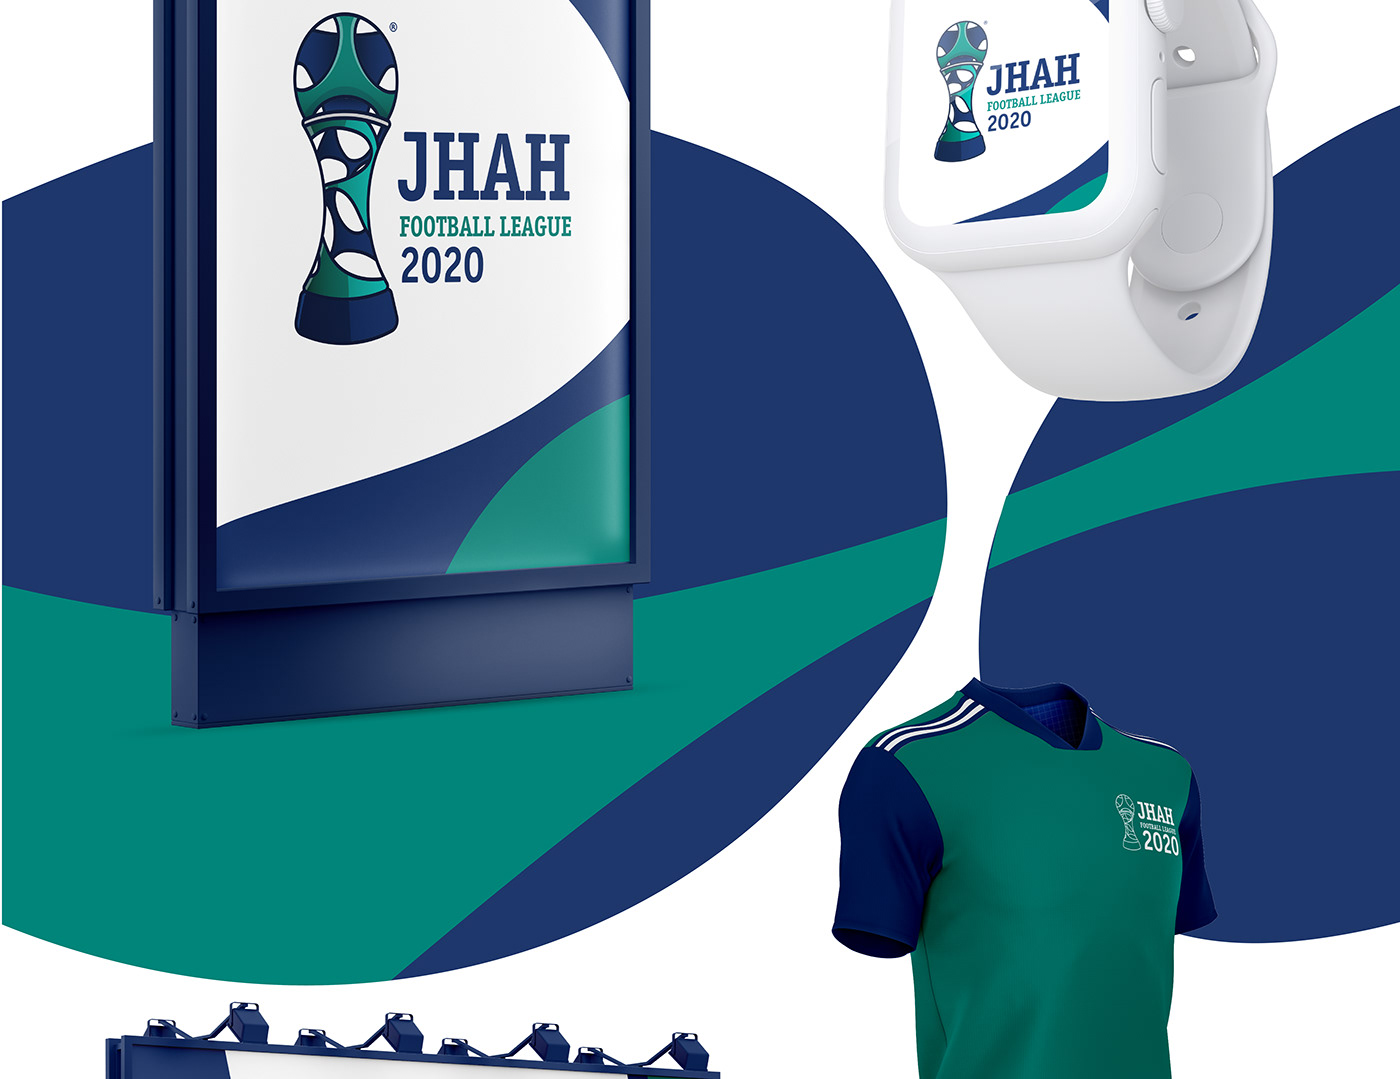 logo JHAH hospital football soccer trophy award leauge sport medical